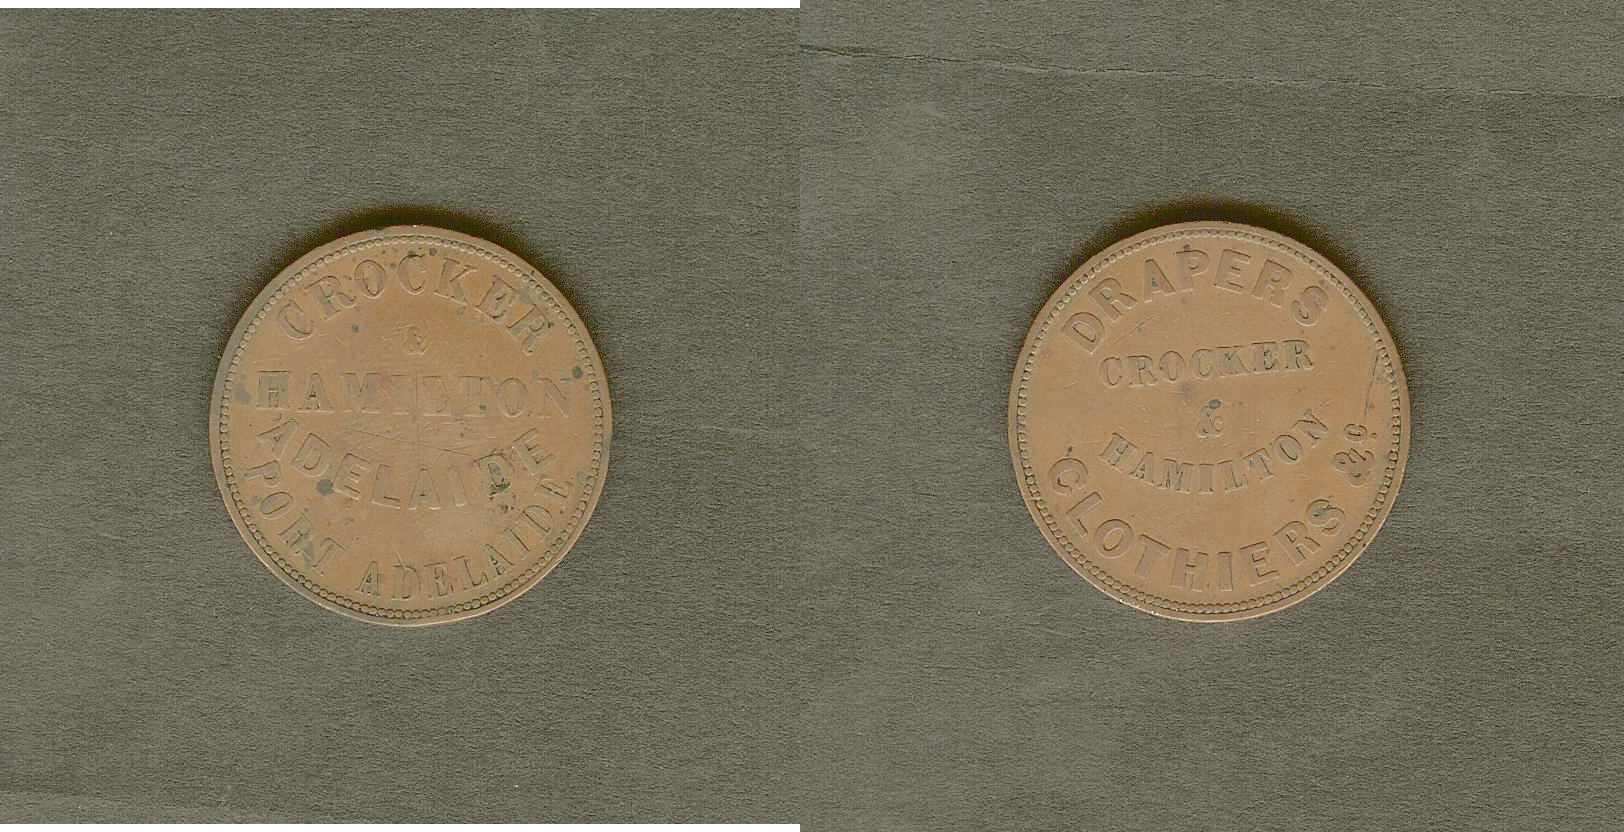 Australian penny token Crocker and Hamilton Adelaide n.d. aVF